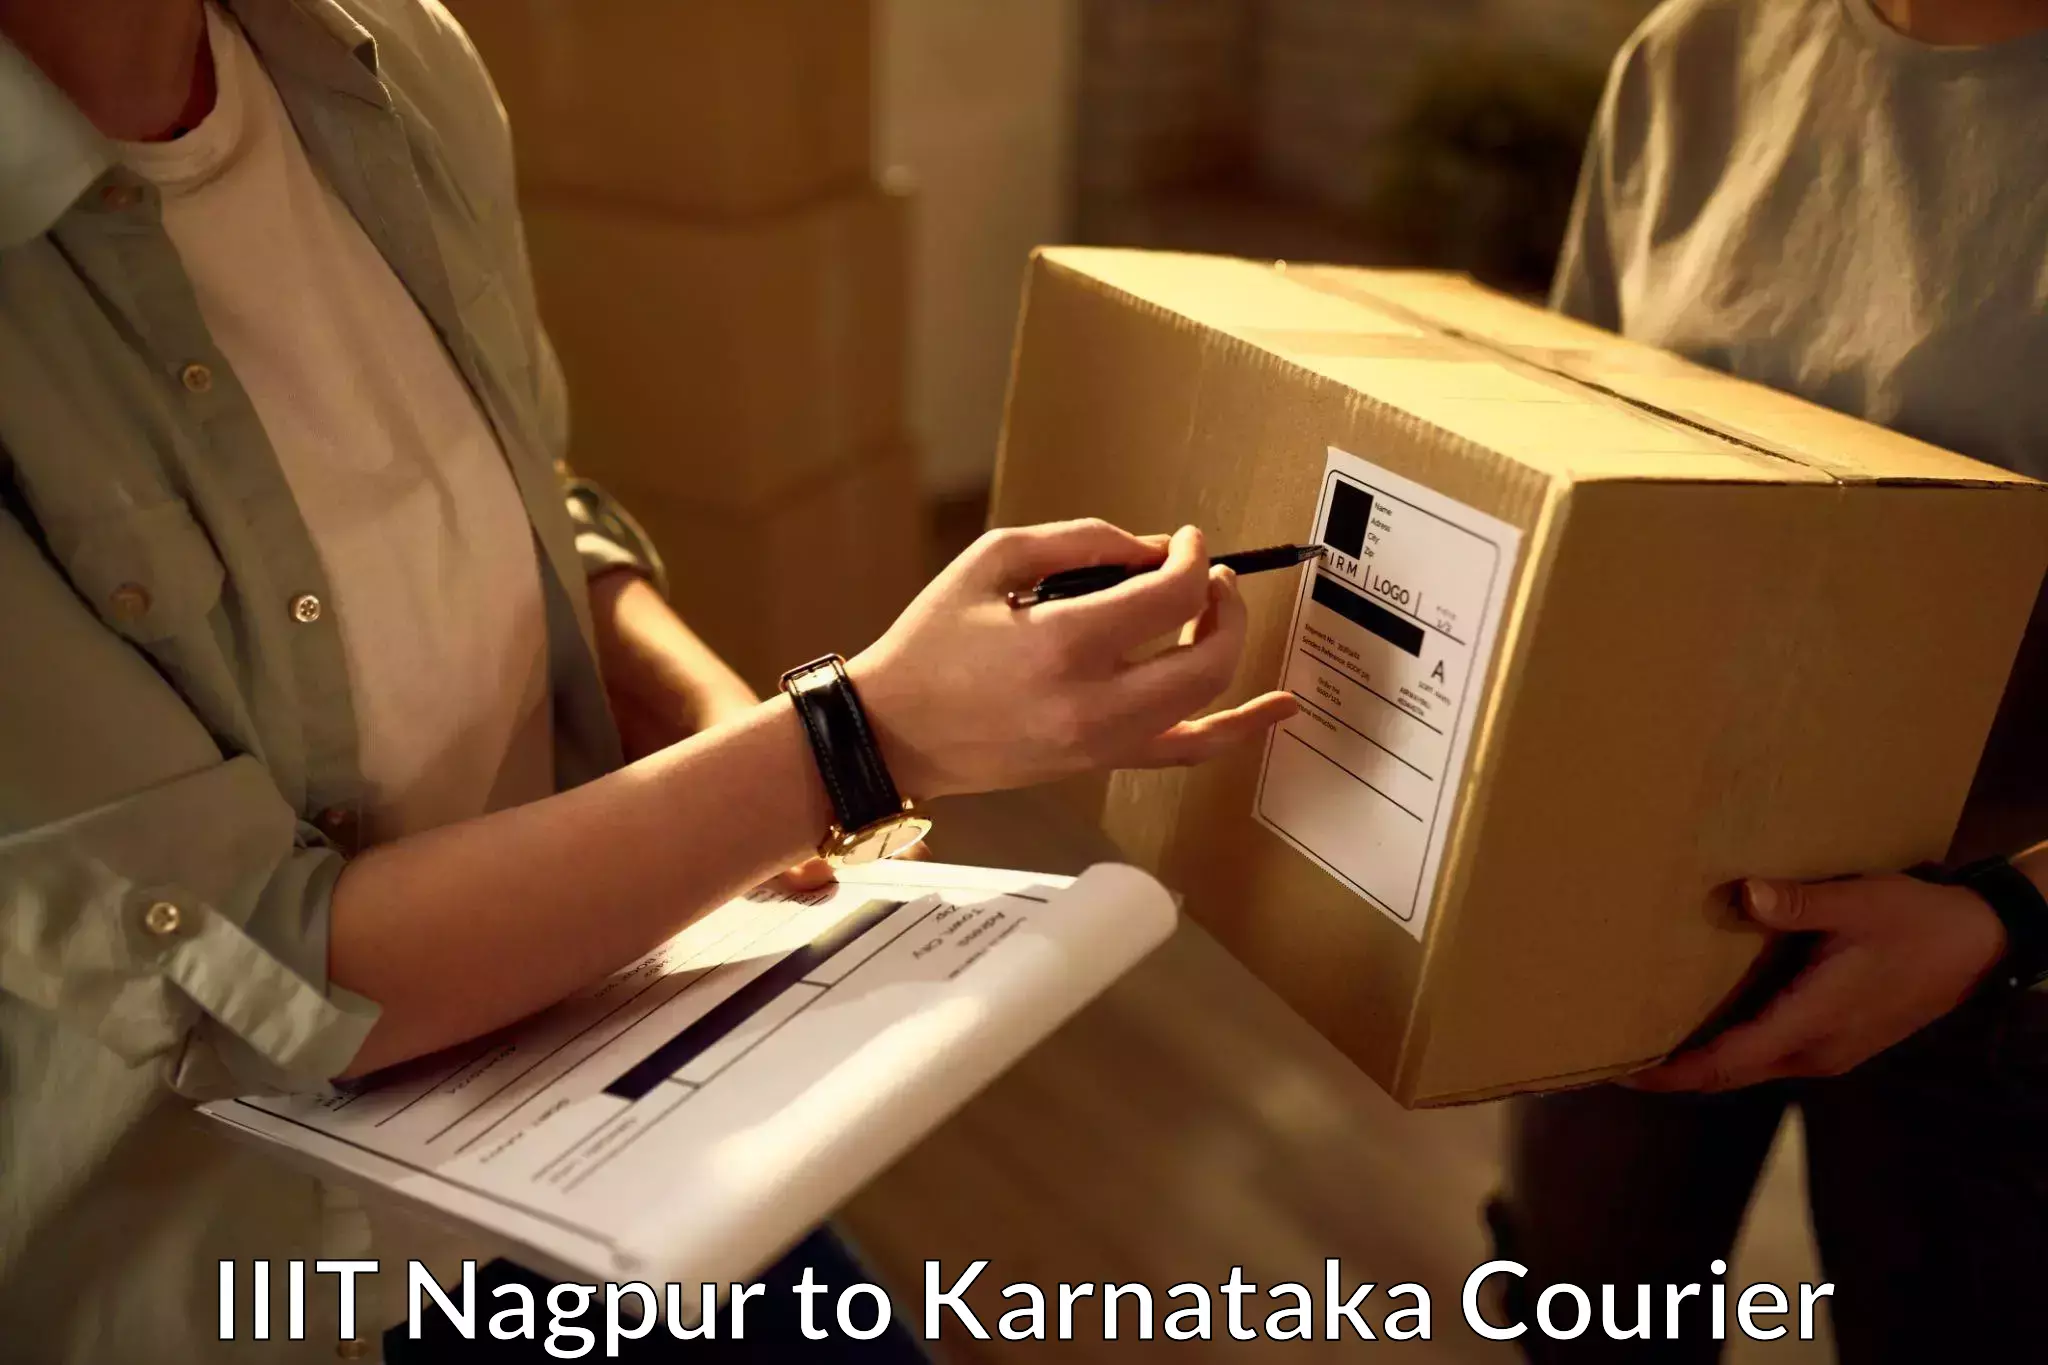 Efficient order fulfillment IIIT Nagpur to Karnataka